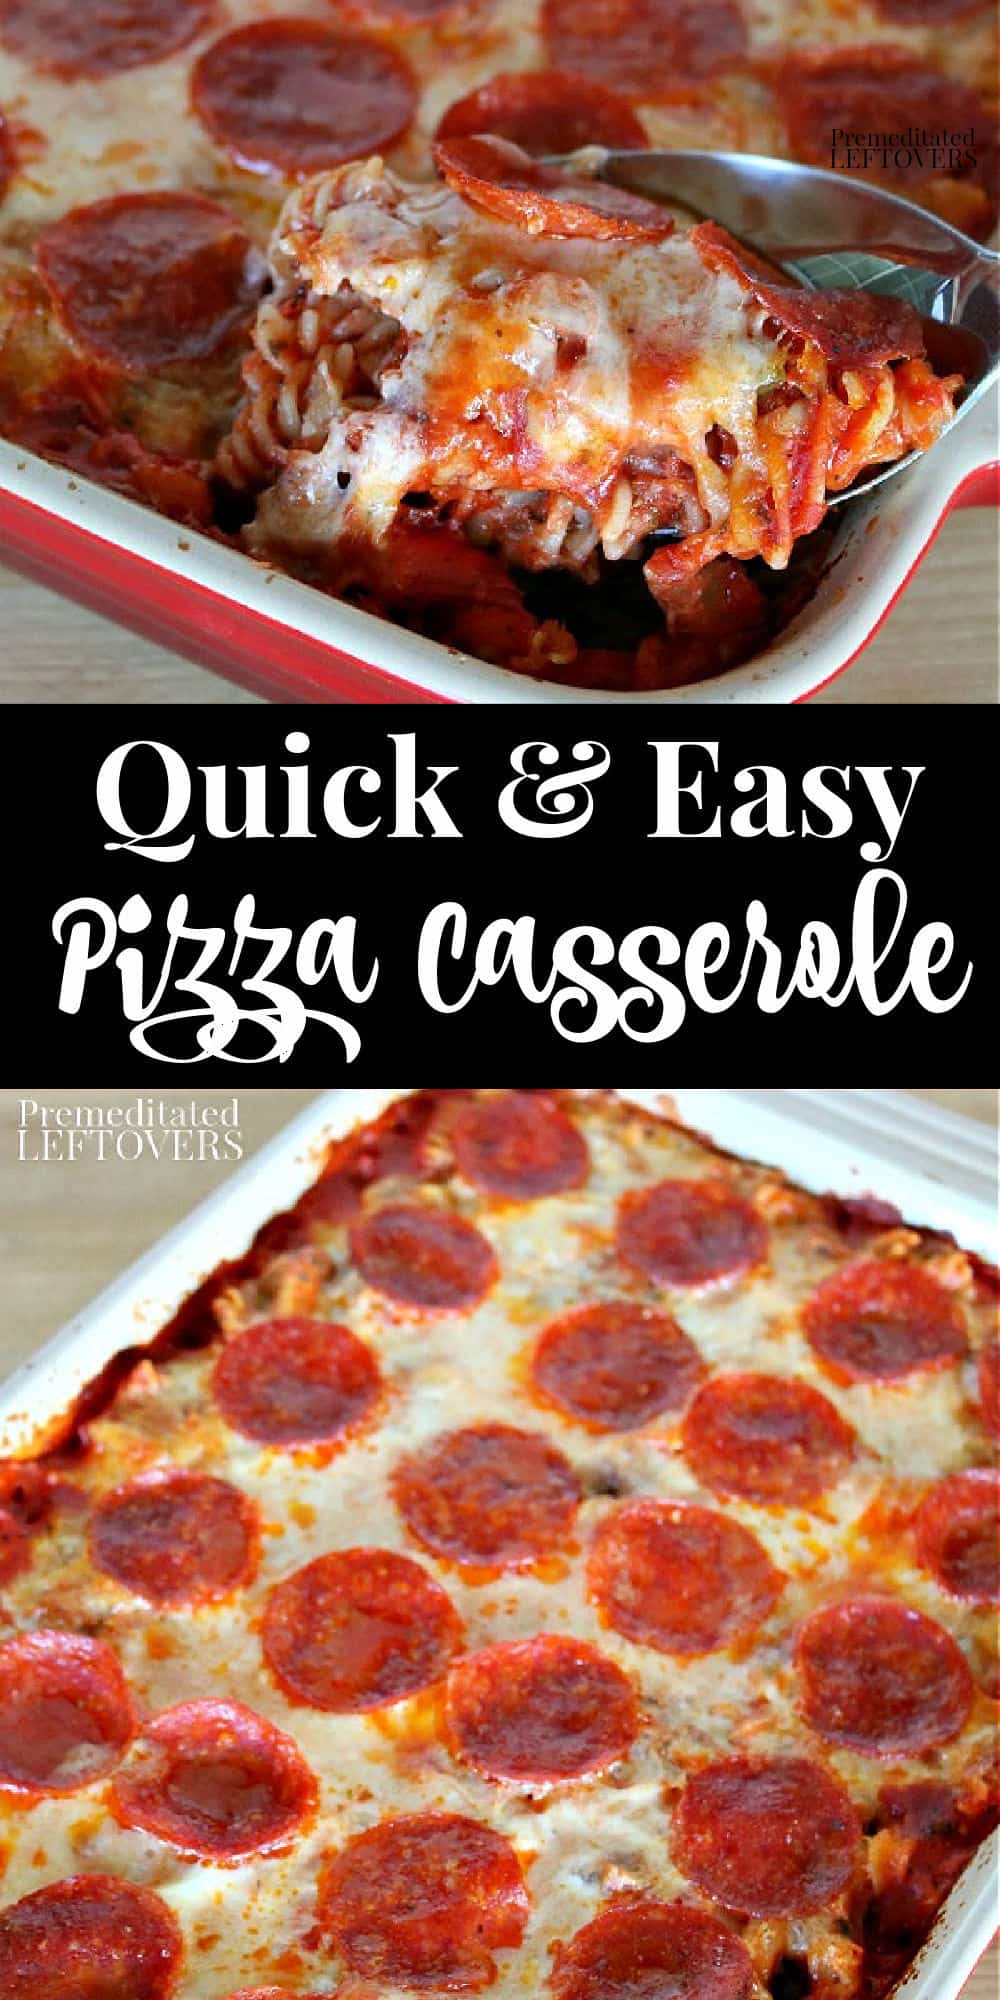 Pizza Casserole Recipe - An Easy Pasta Bake Recipe